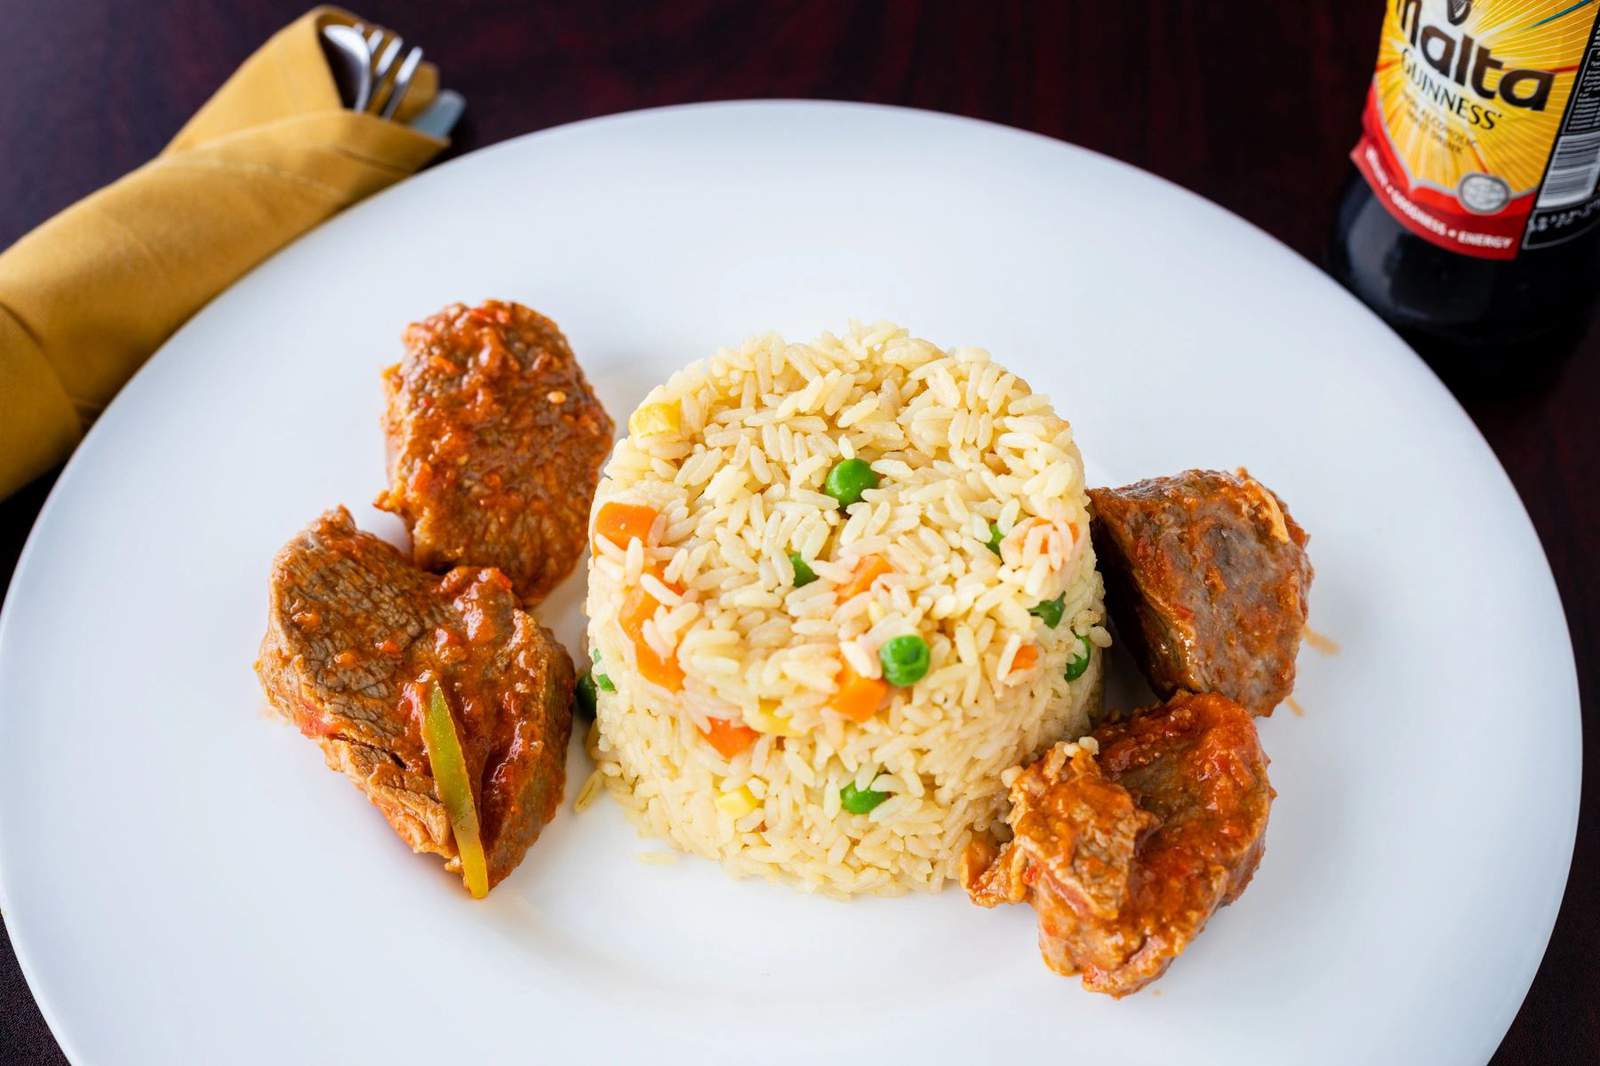 Nigerian restaurant Jollof Rice King opens doors on Richmond